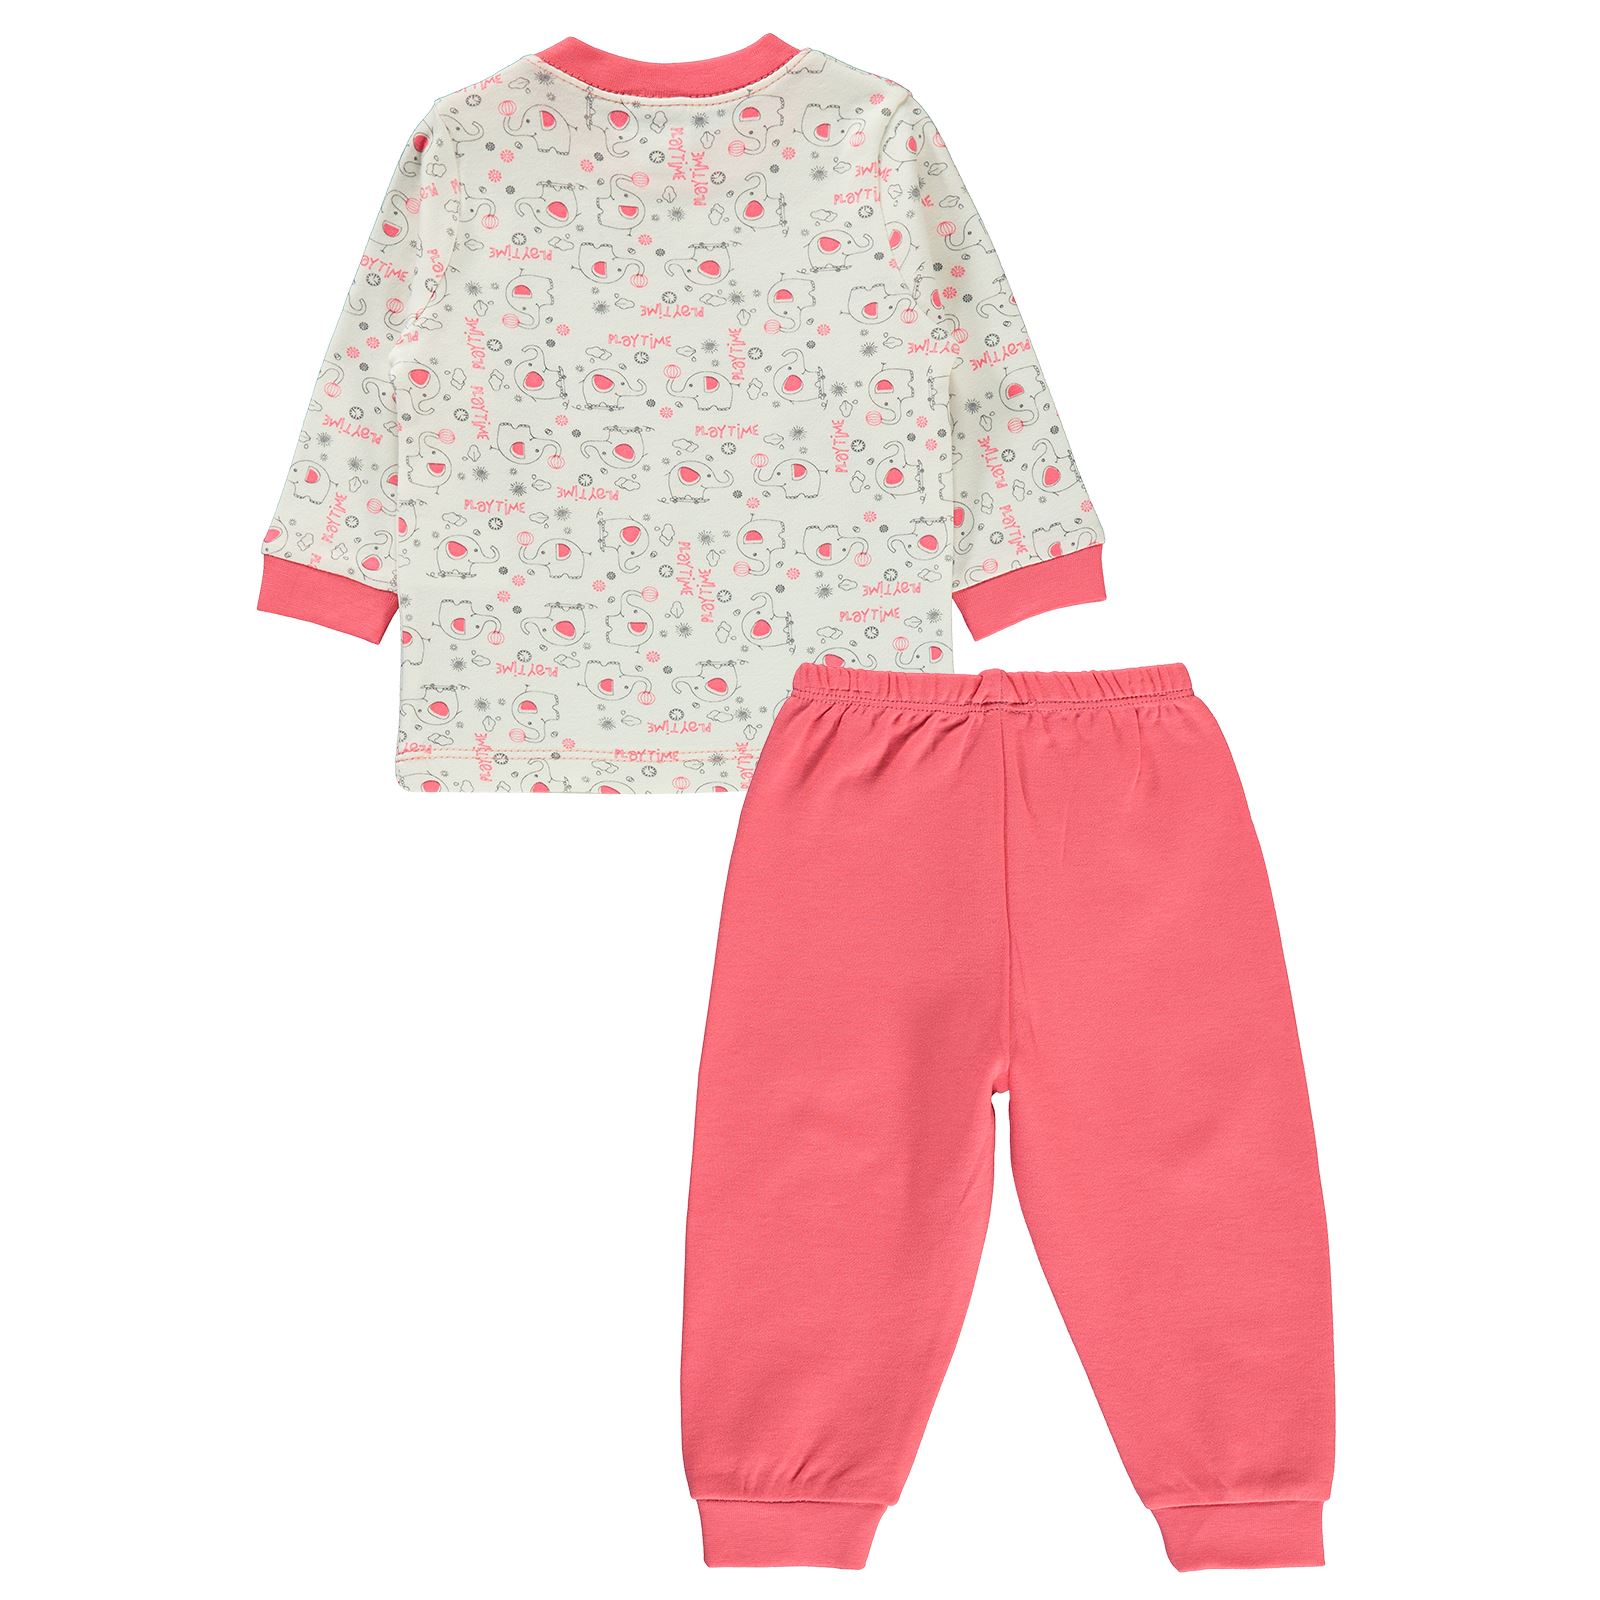 Misket Kız Bebek Pijama Takımı 6-12 Ay Narçiçeği